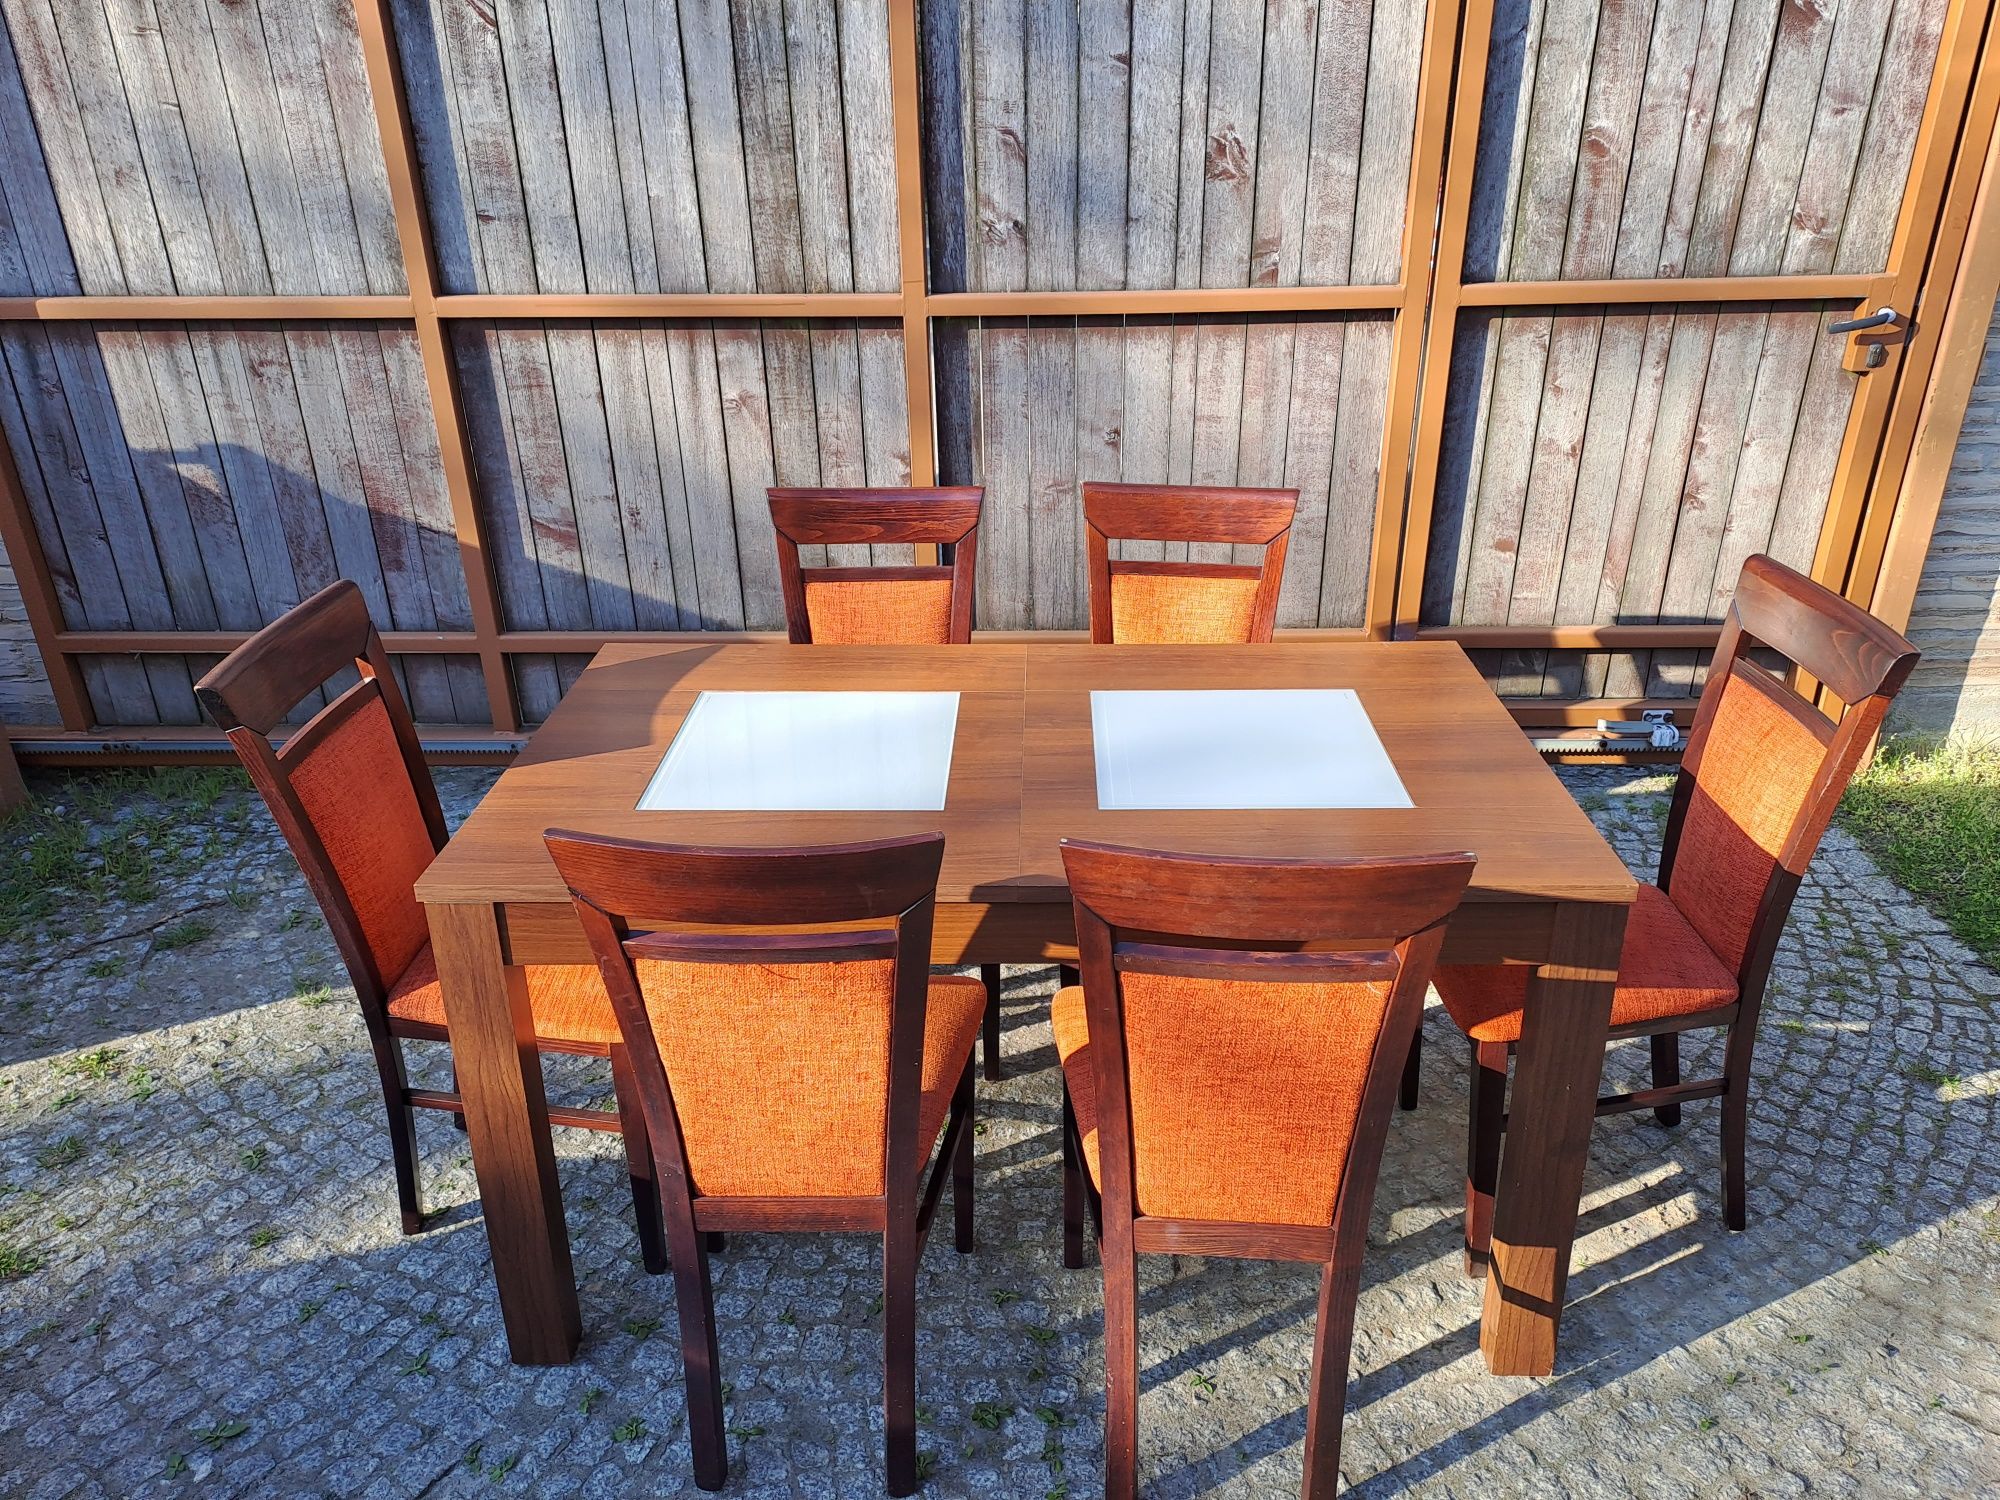 Stół krzesła stolik kawowy